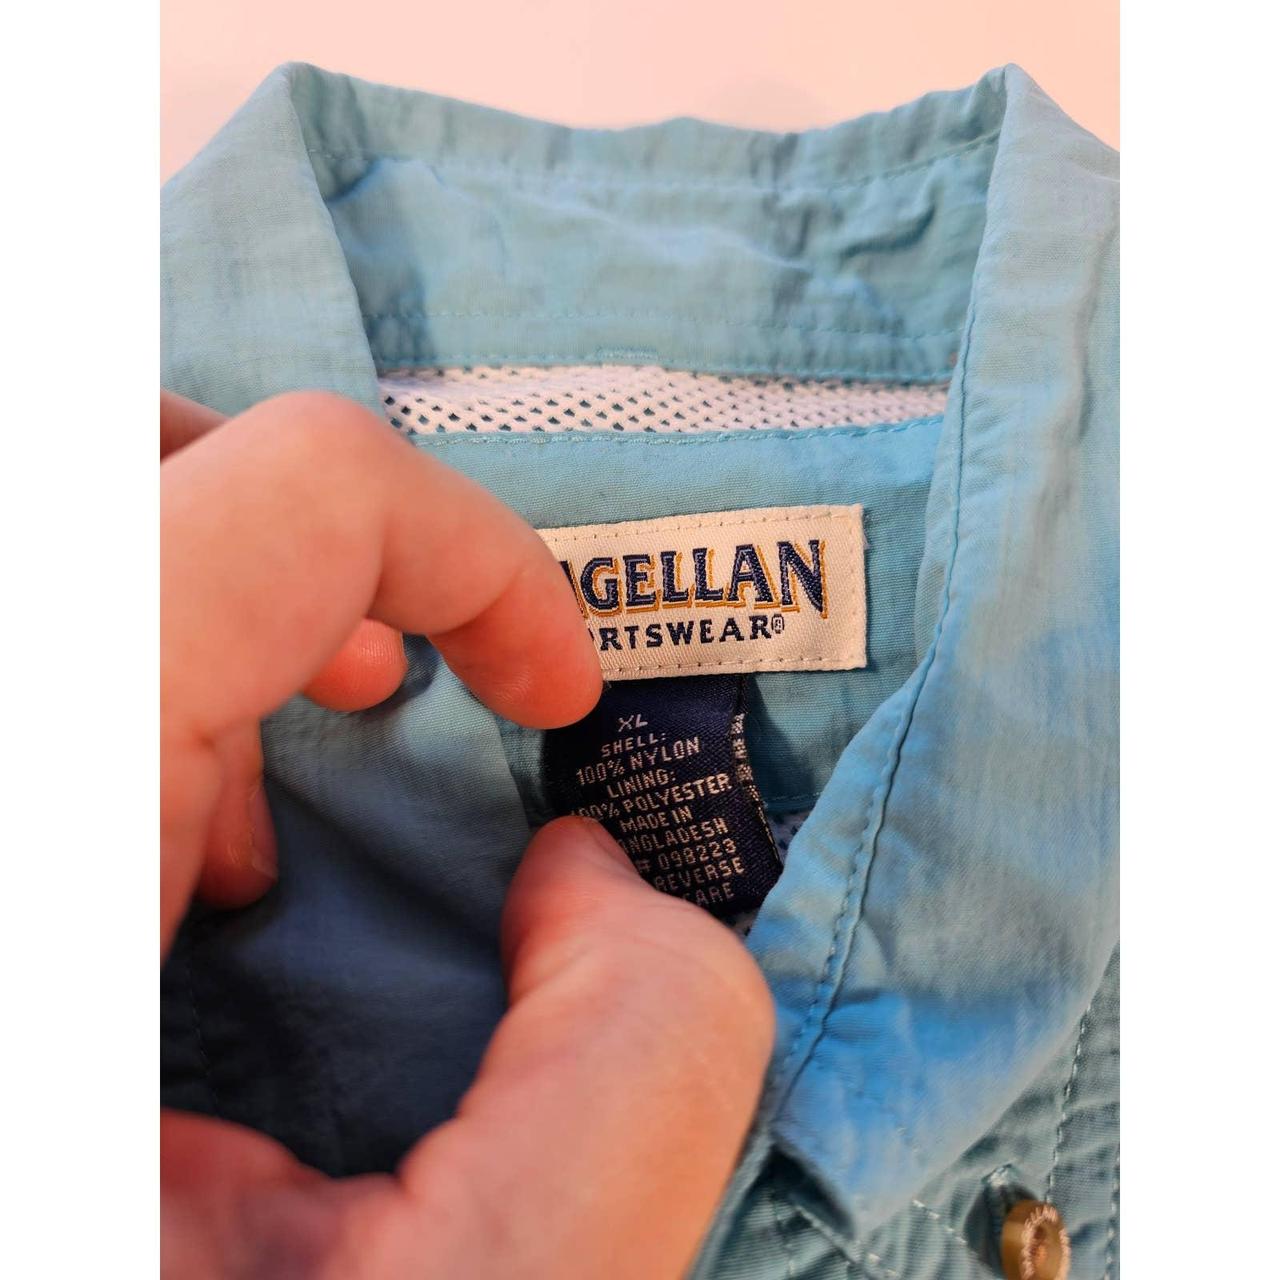 Magellan Men's Shirt - Blue - XL